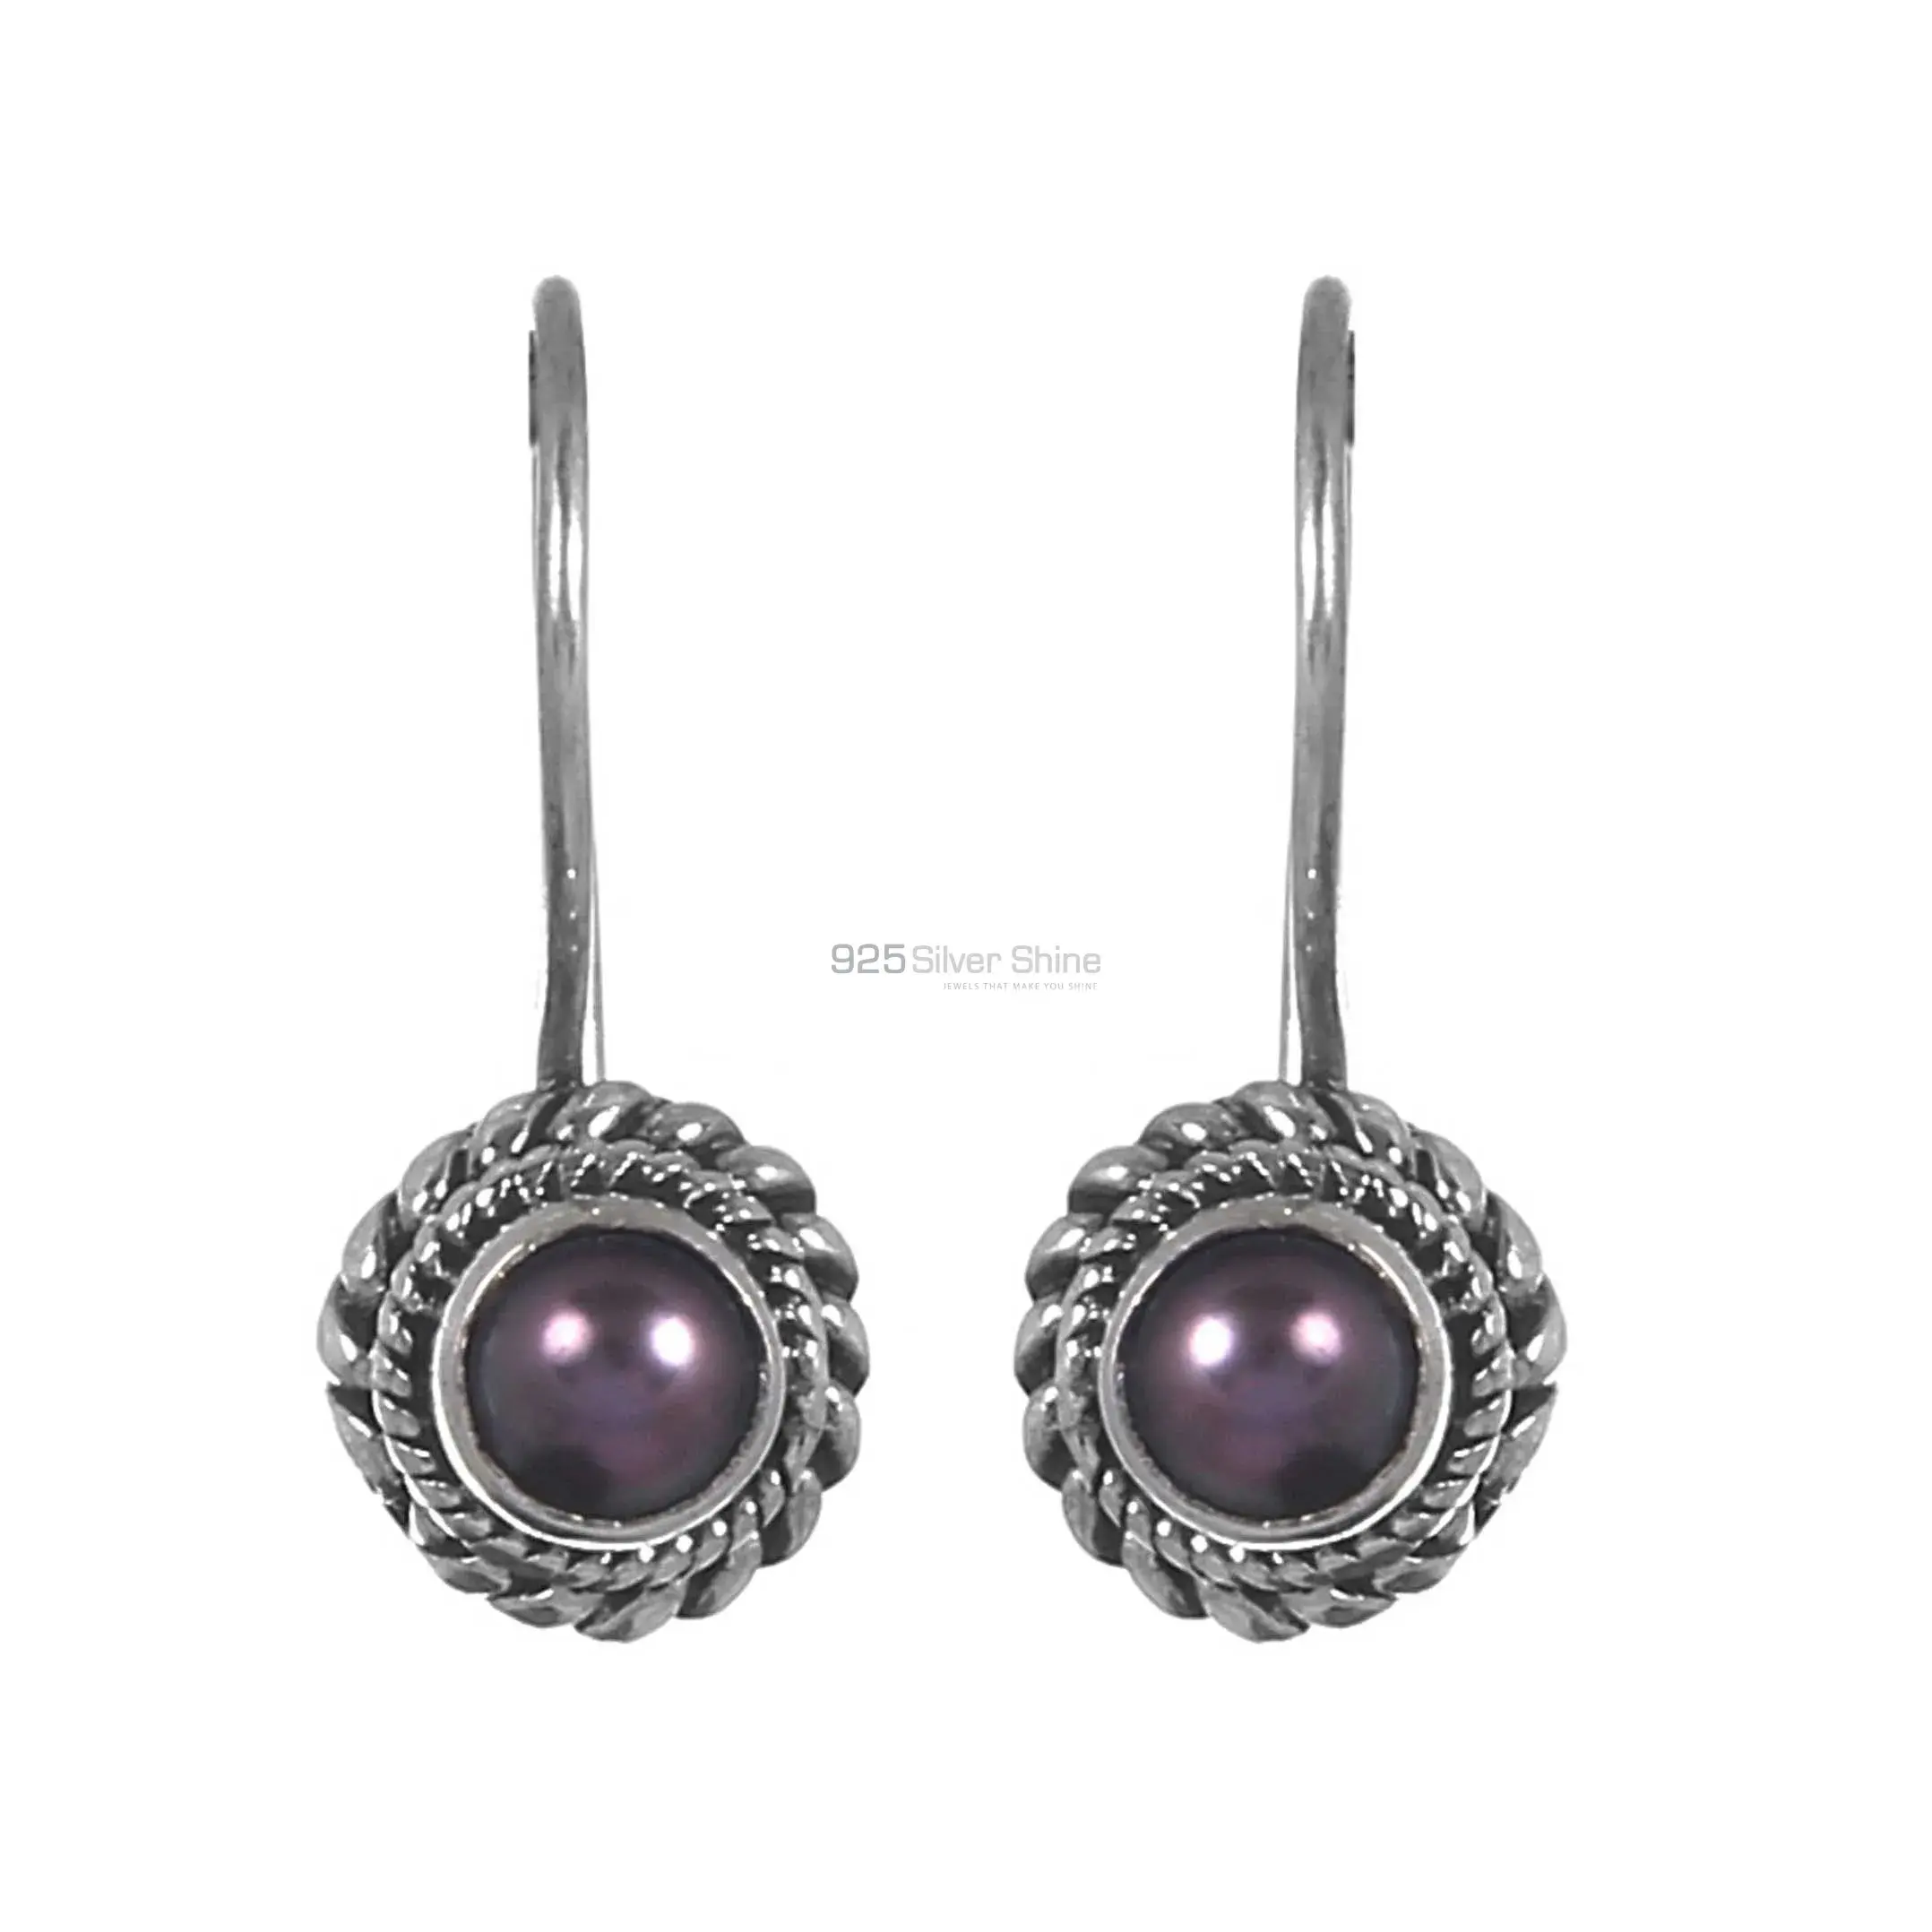 Wholesale Black Pearl Gemstone Earrings In Sterling Silver Jewelry 925SE221